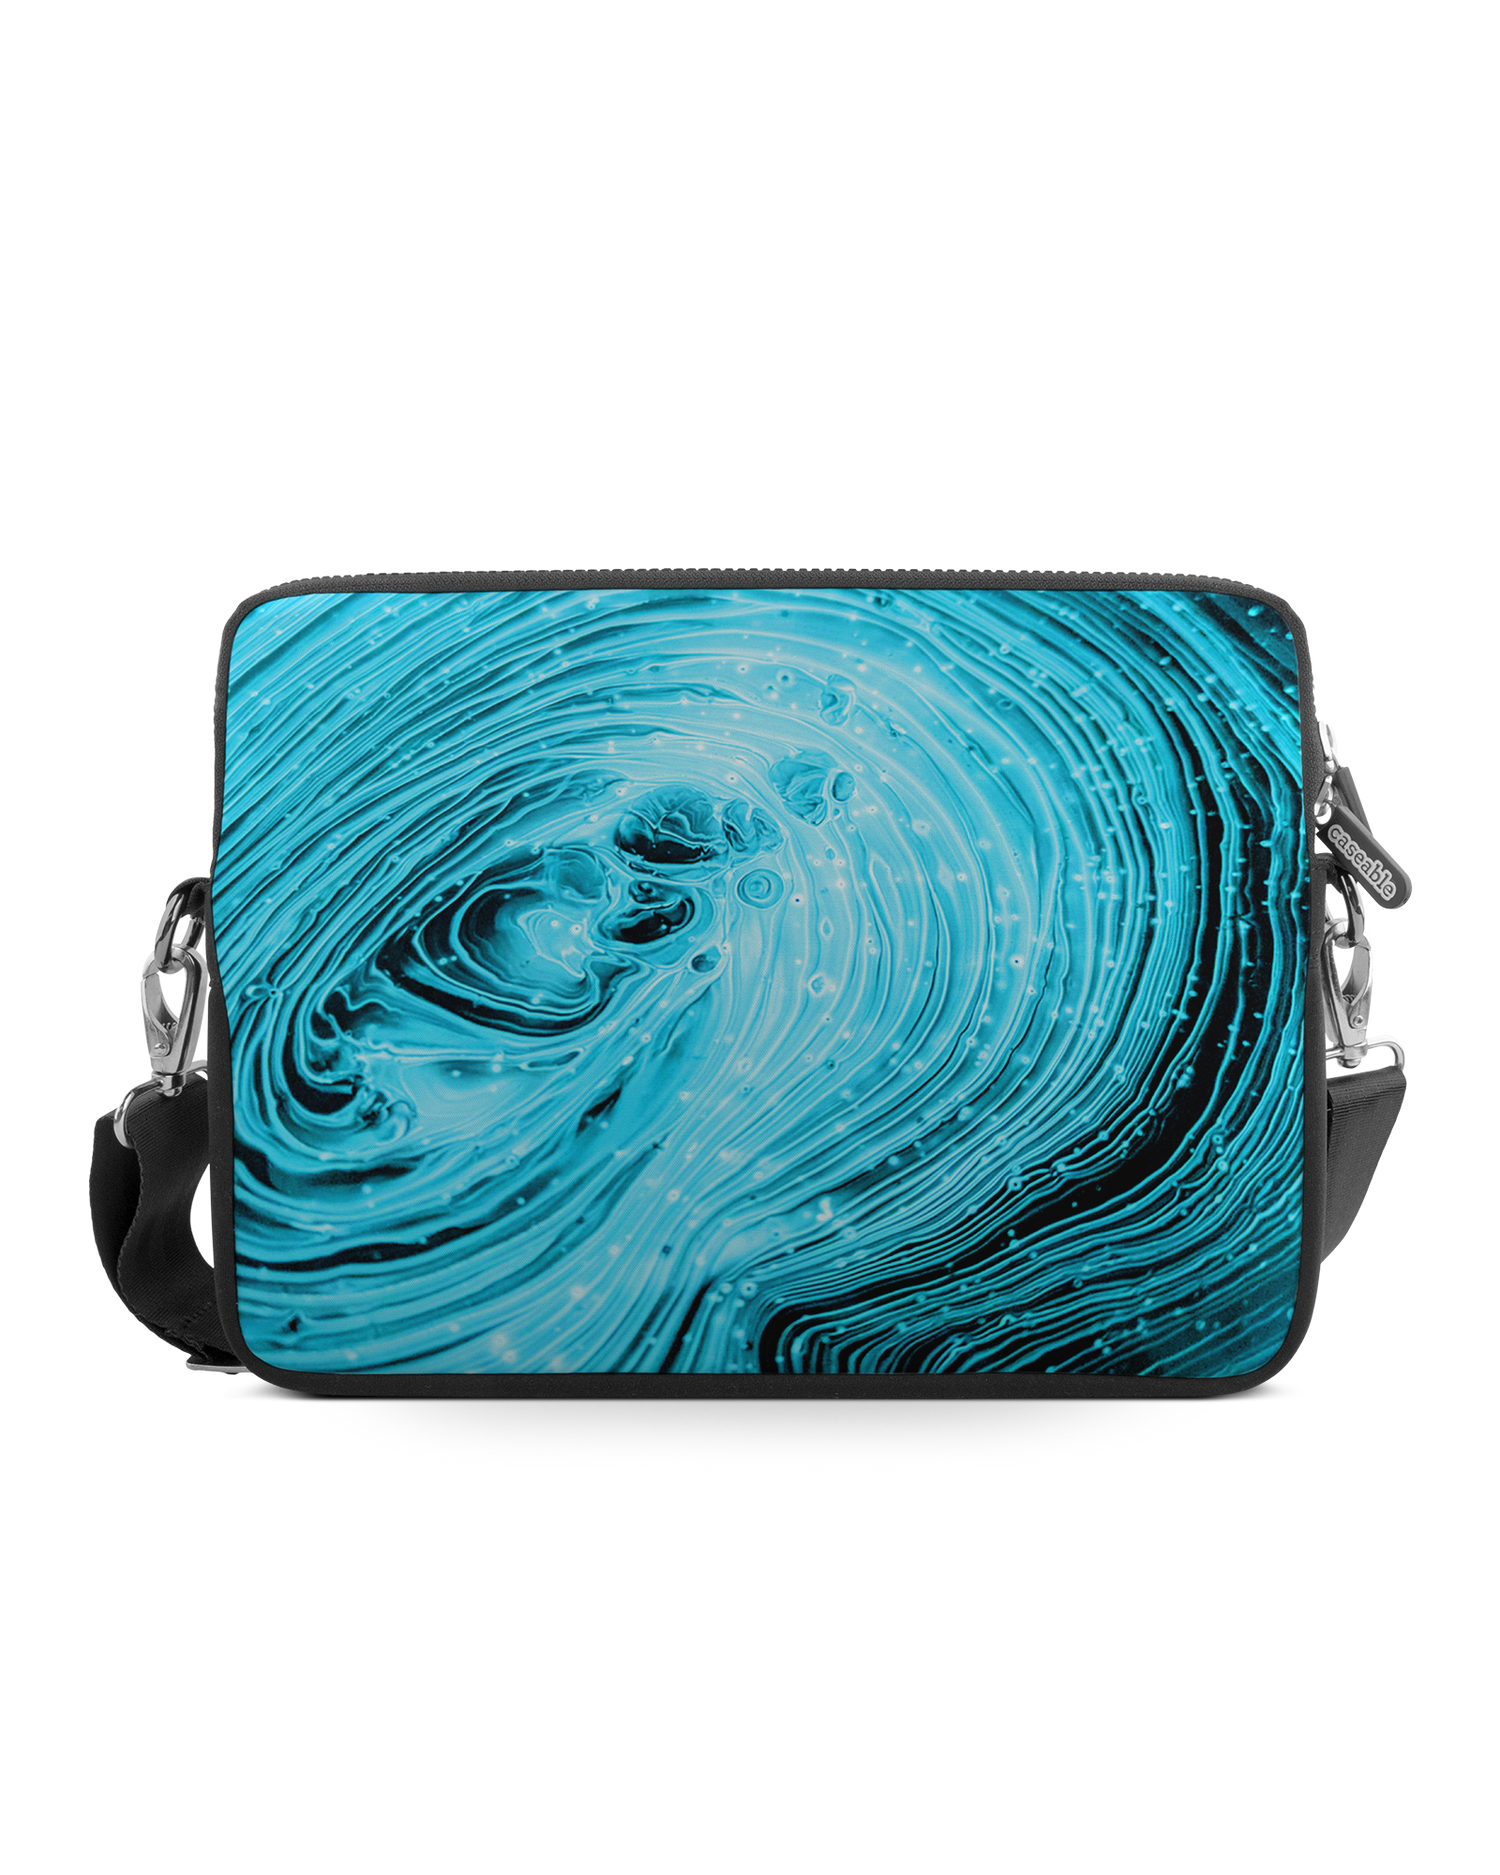 Turquoise Ripples Premium Laptoptasche 17 Zoll: Vorderansicht